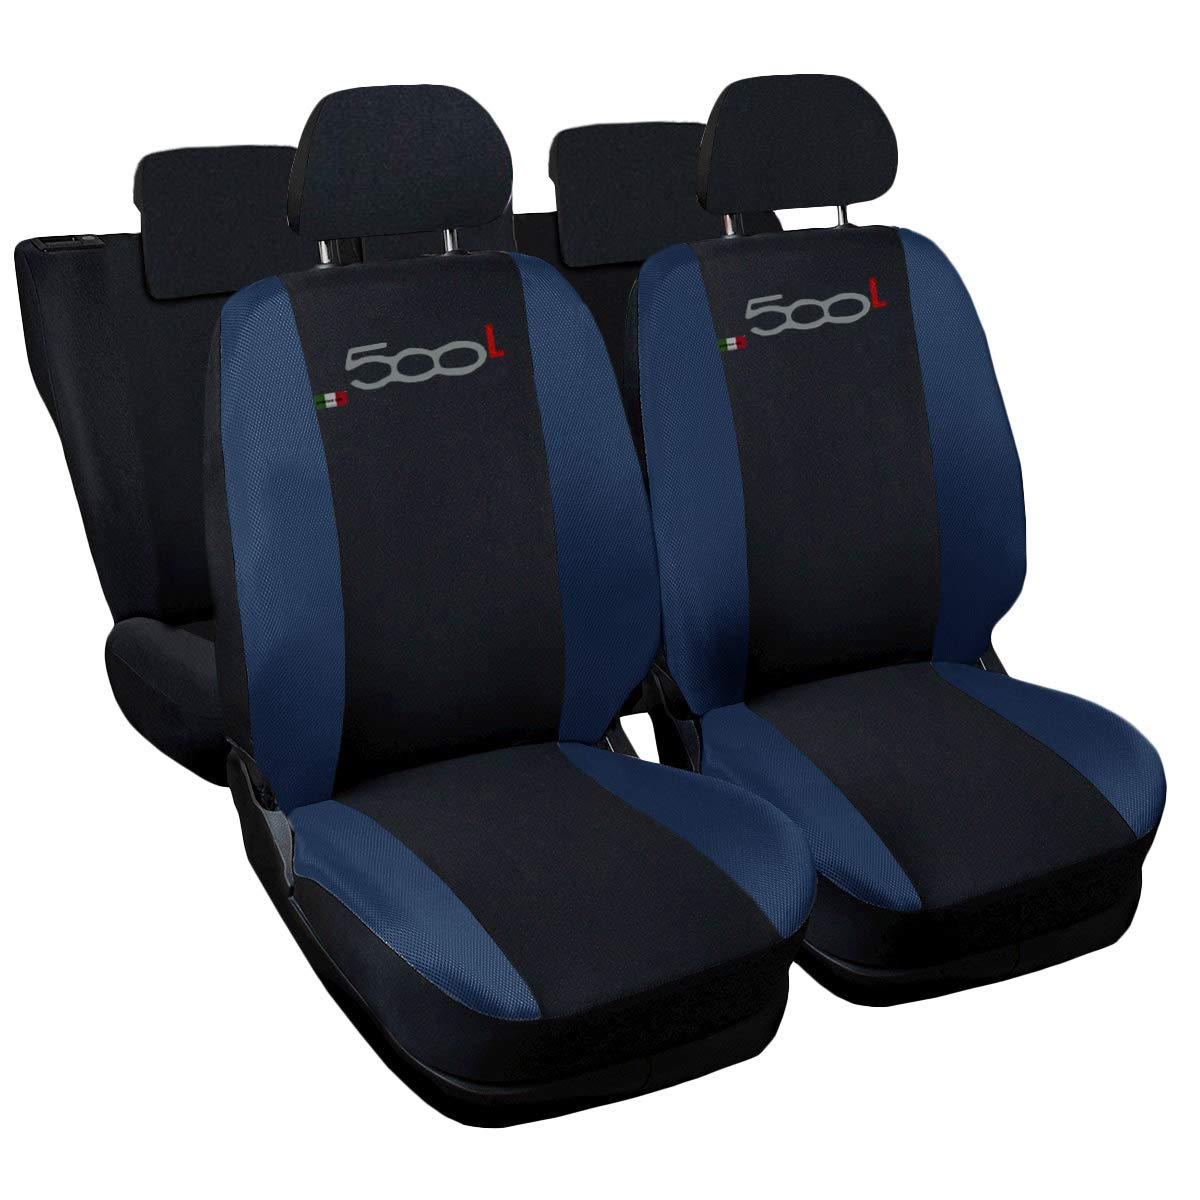 500L zweifarbige Sitzbezüge mit Logo - dunkelblau schwarz von Lupex Shop